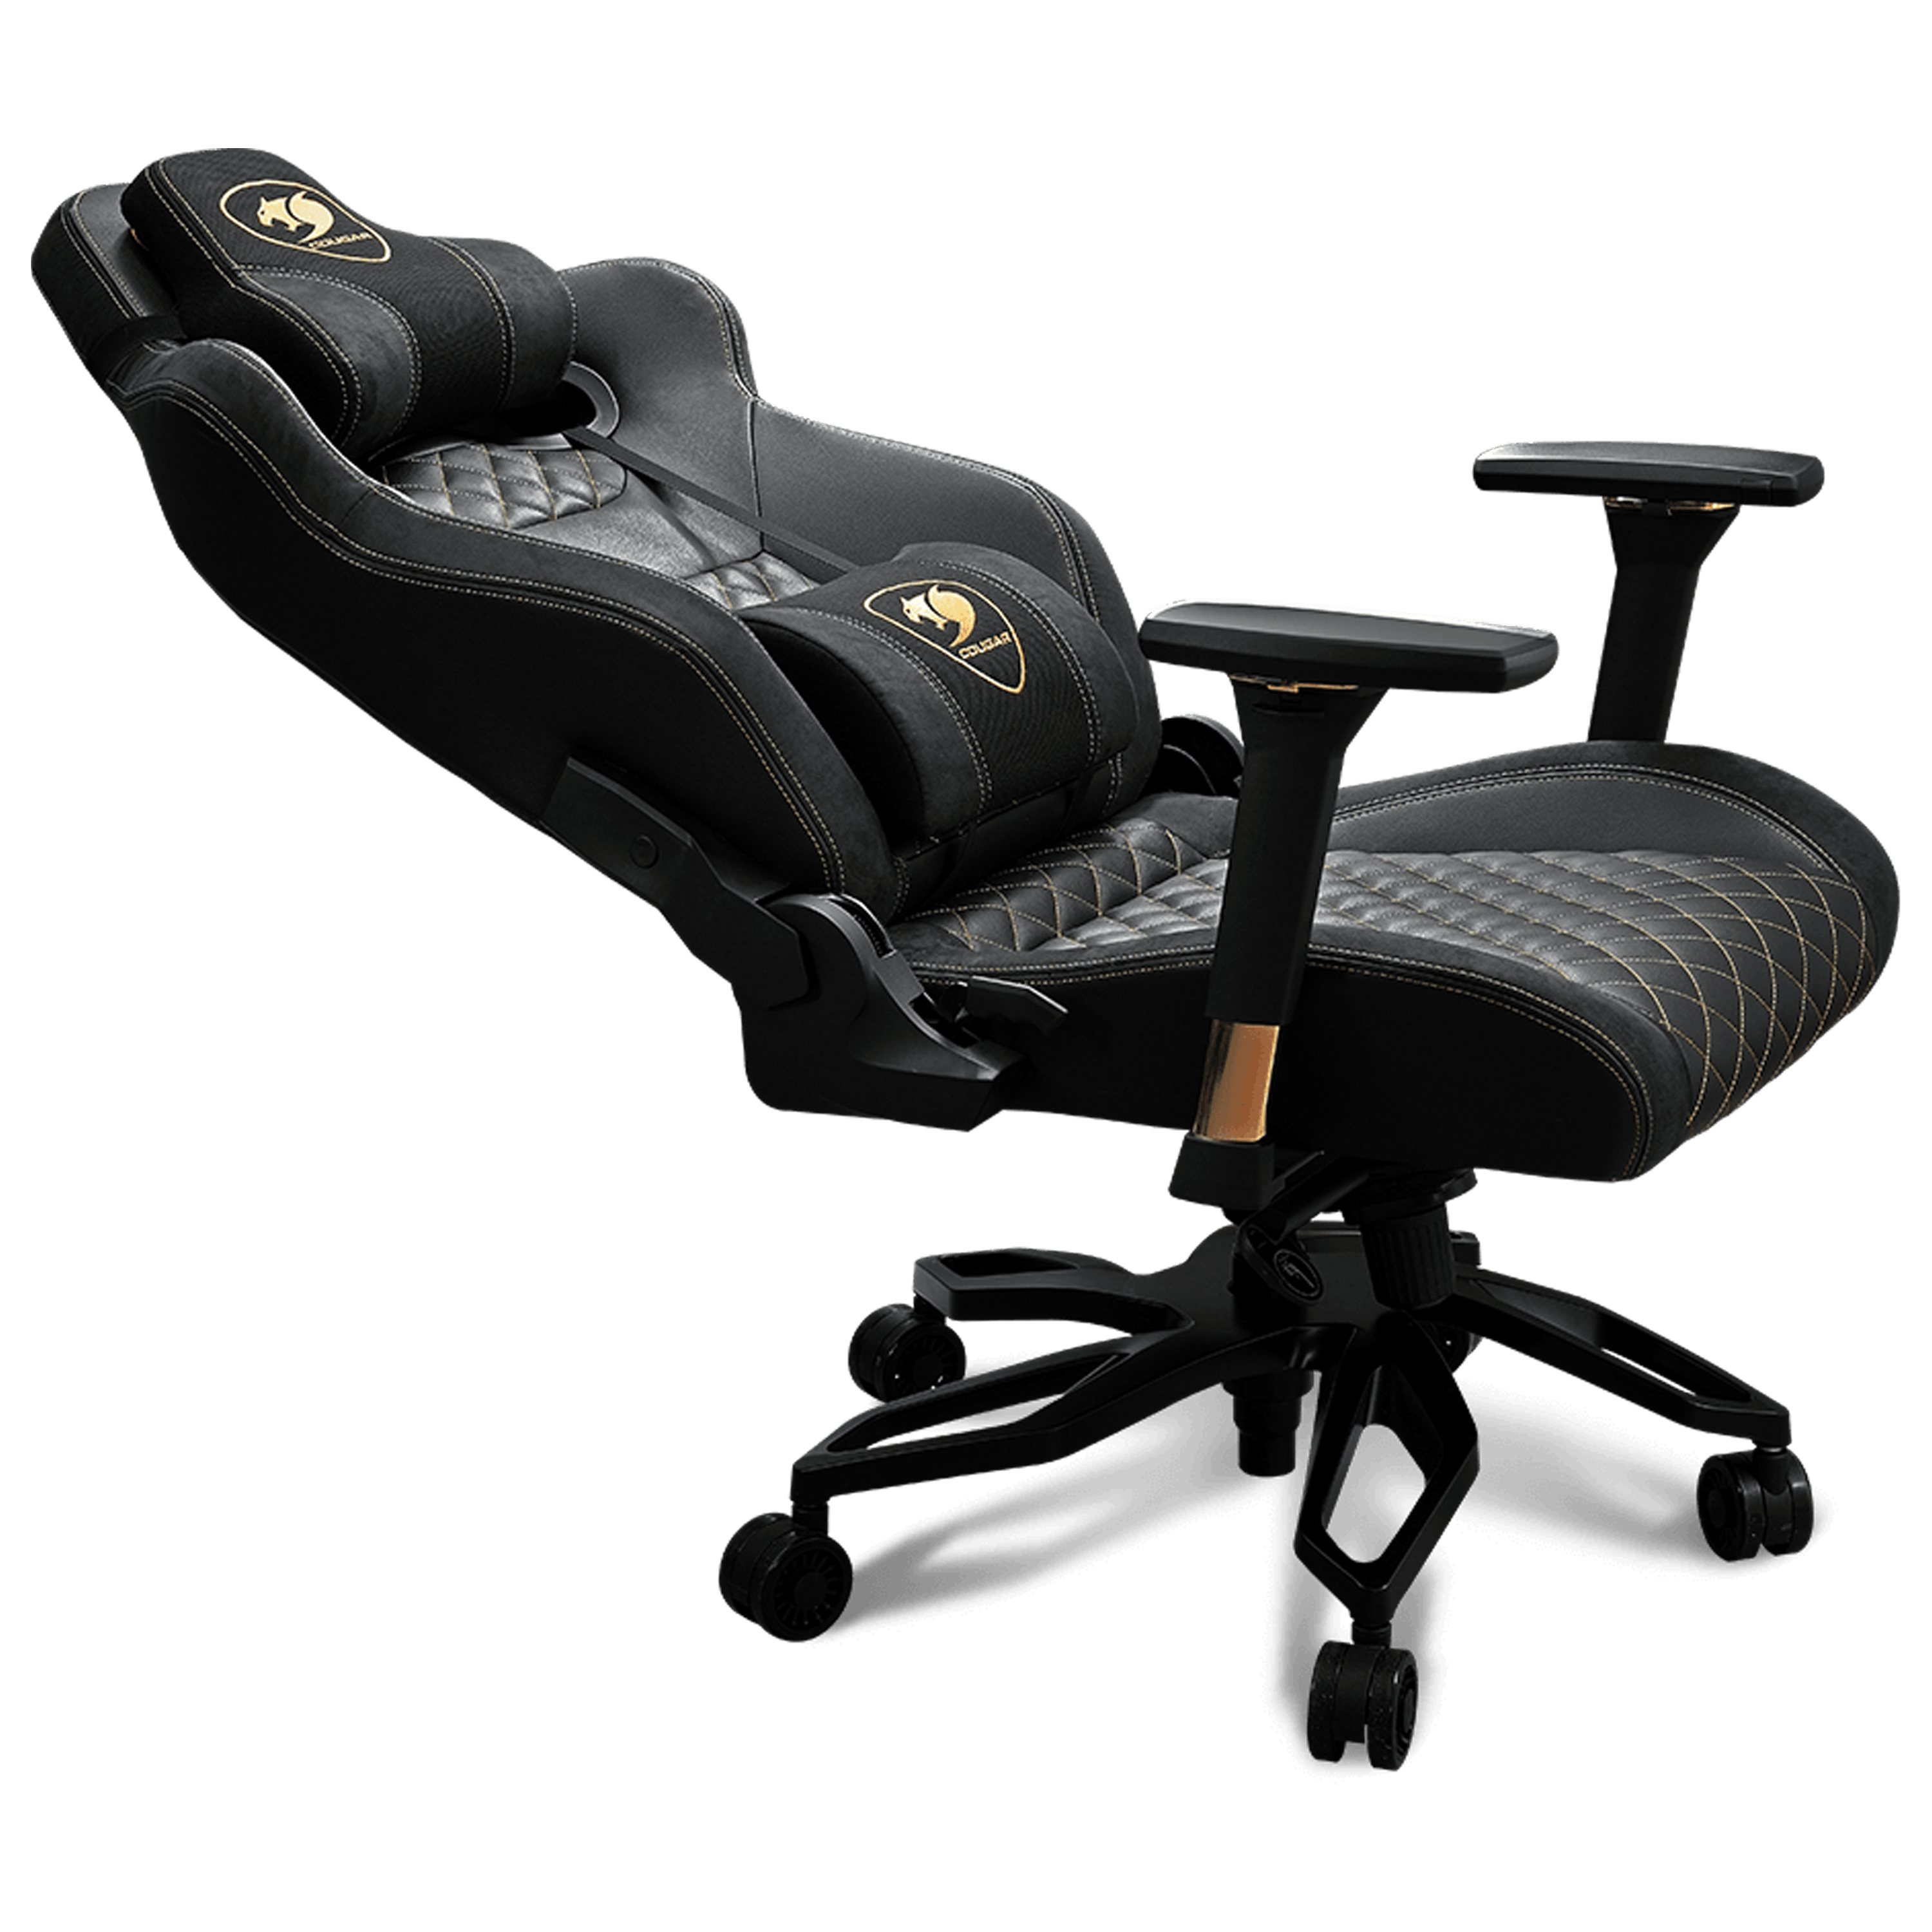 כסא גיימינג Cougar Armor Titan Pro Gaming Chair - צבע שחור וזהב שנה אחריות ע